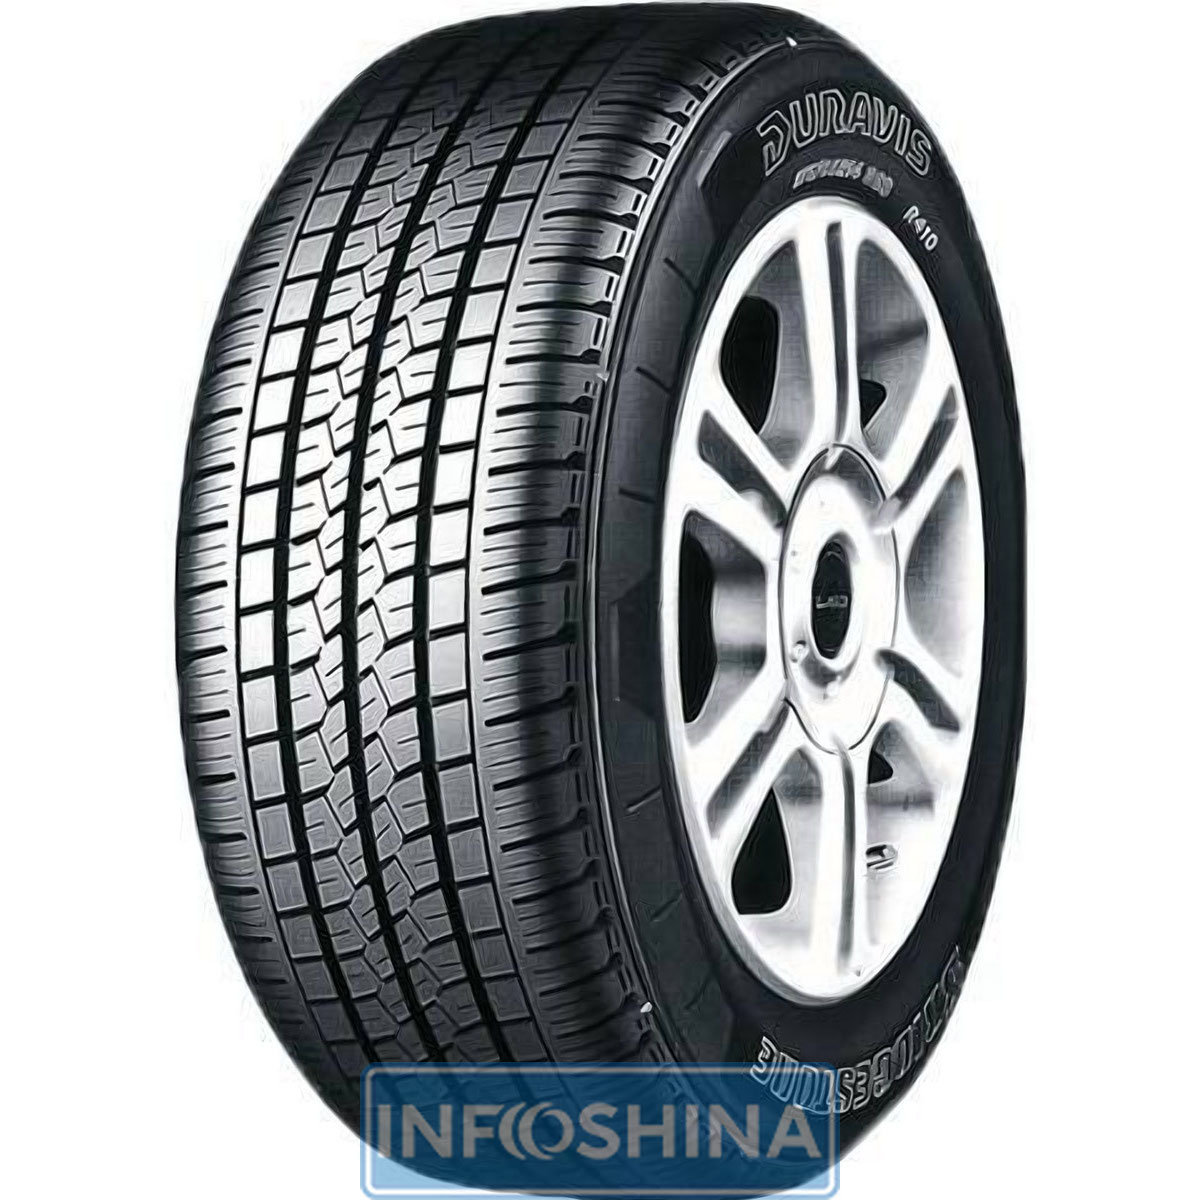 Купить шины Bridgestone Duravis R410